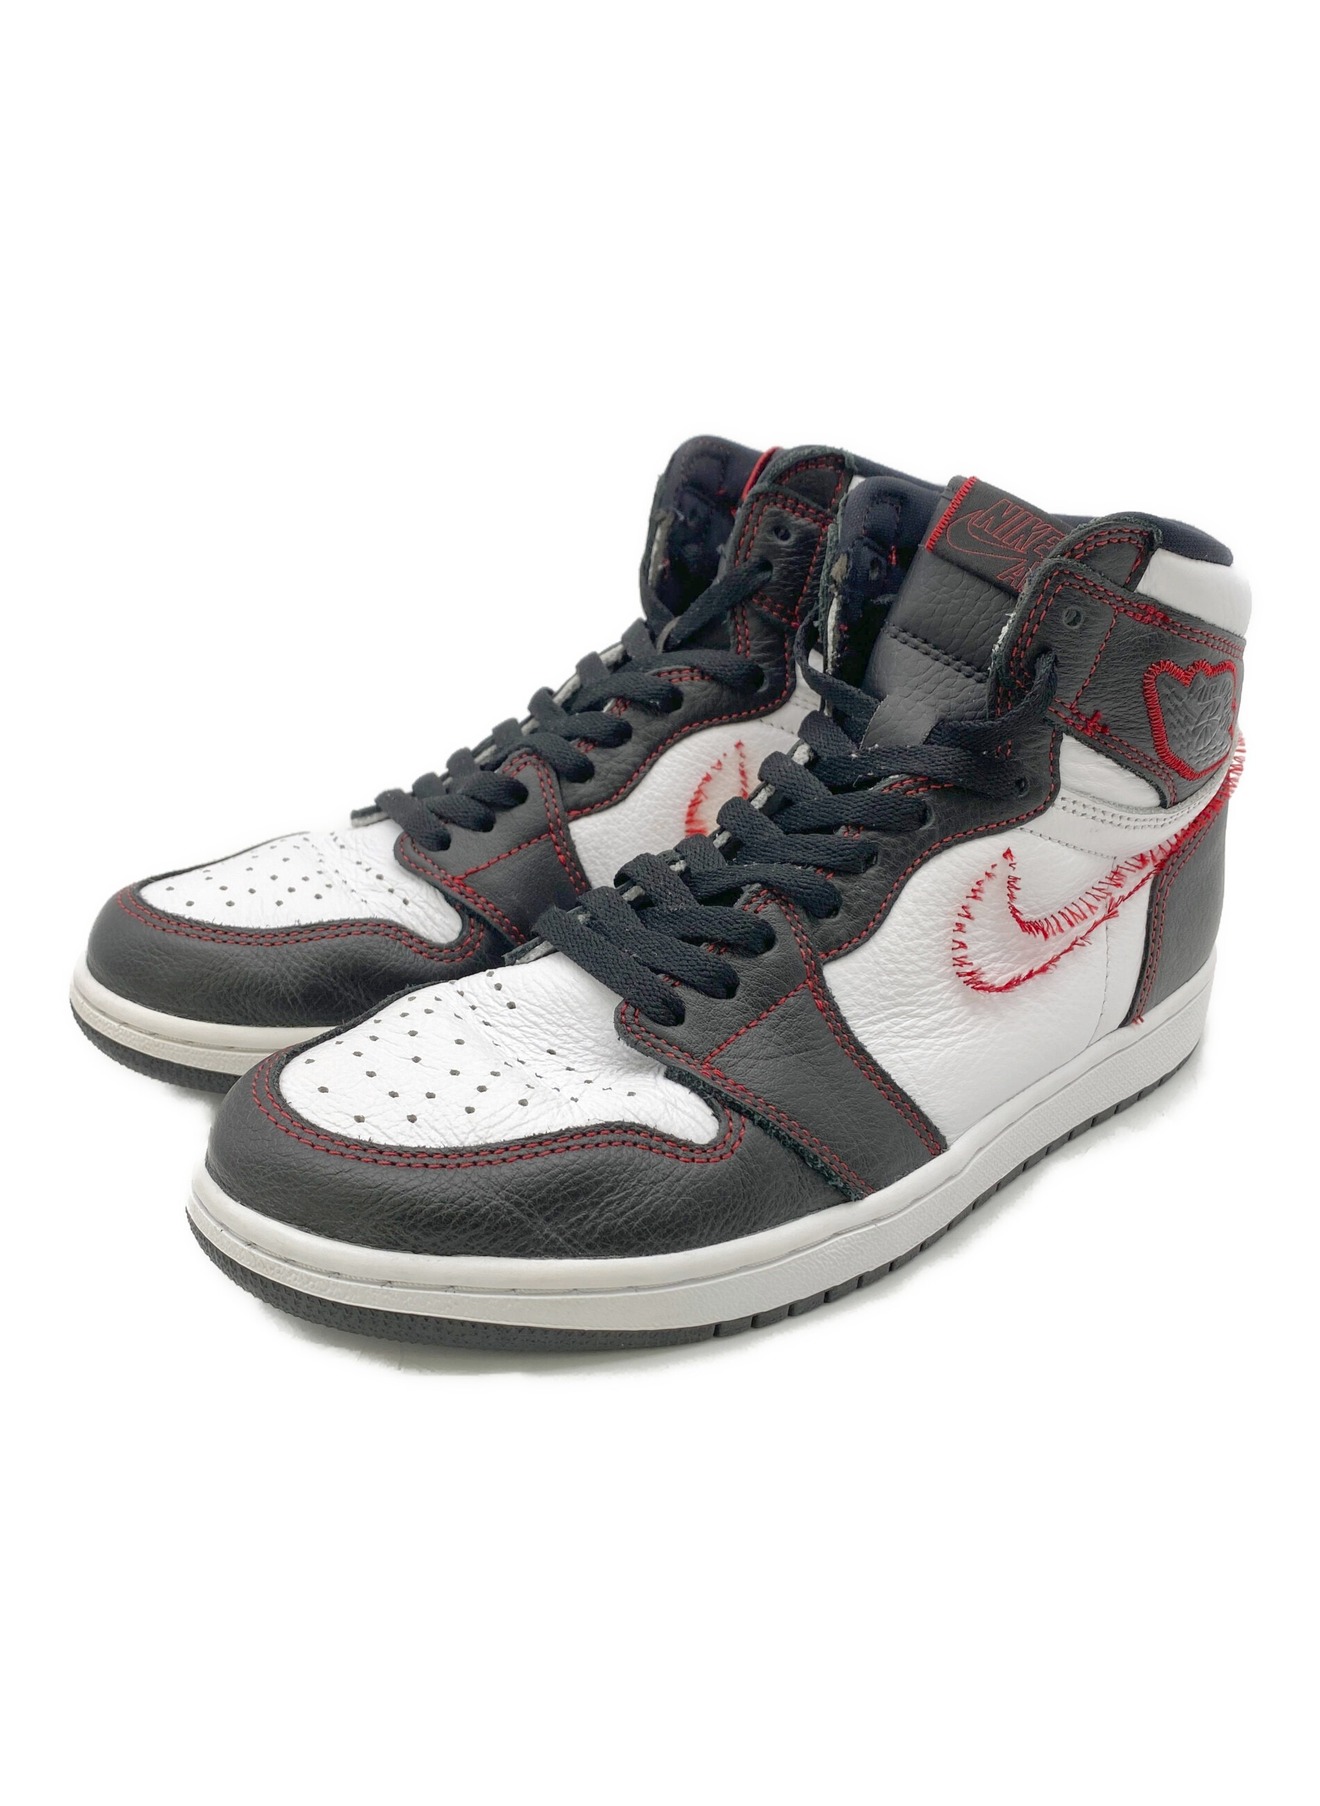 NIKE (ナイキ) Nike Air Jordan 1 High OG Defiant/Gym Red（デファイアント/ジム レッド）  ホワイト×ブラック サイズ:27.5㎝